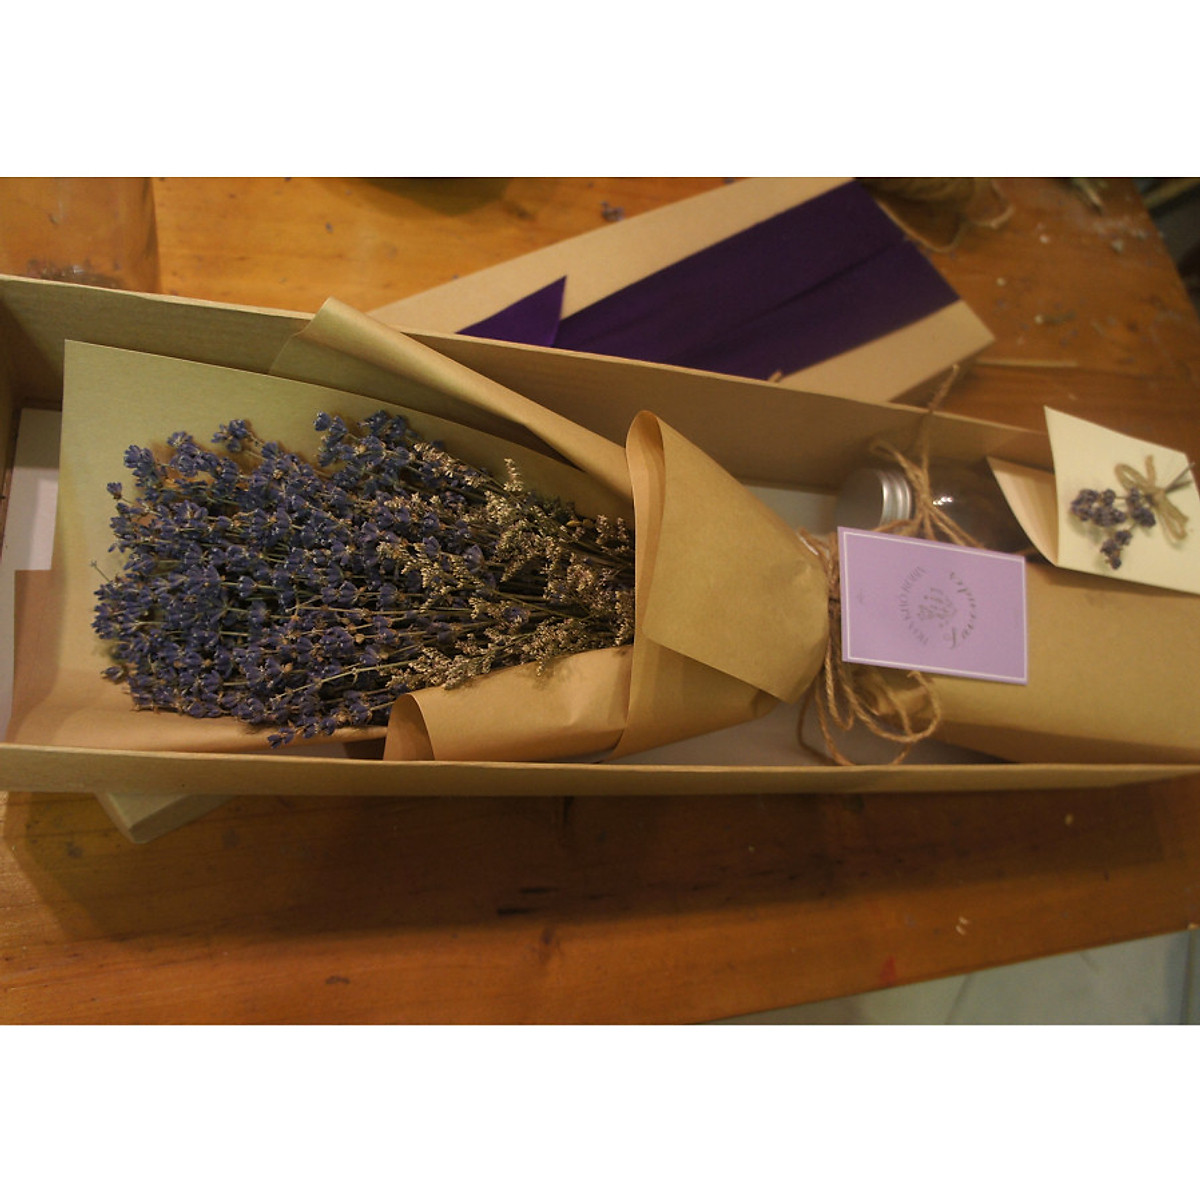 Hộp hoa khô lavender oải hương tự nhiên nhập khẩu Pháp- Hoa khô hương thơm tự nhiên giúp thư giãn- Quà tặng độc đáo cho các dịp lễ 20/10,8/3, valentine